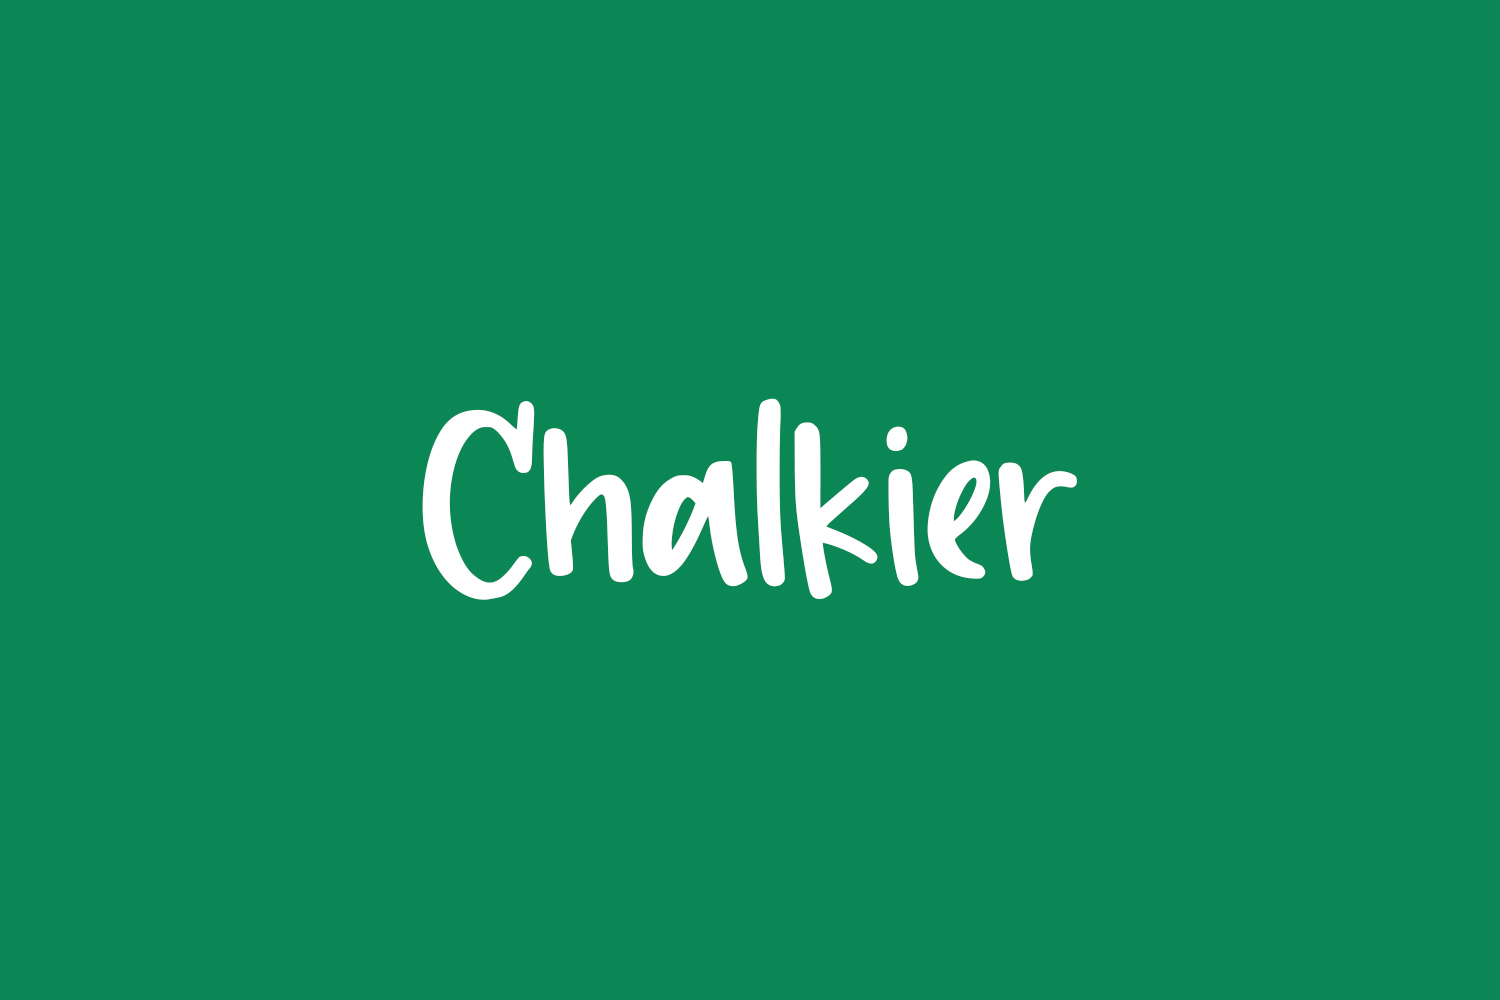 Chalkier Free Font